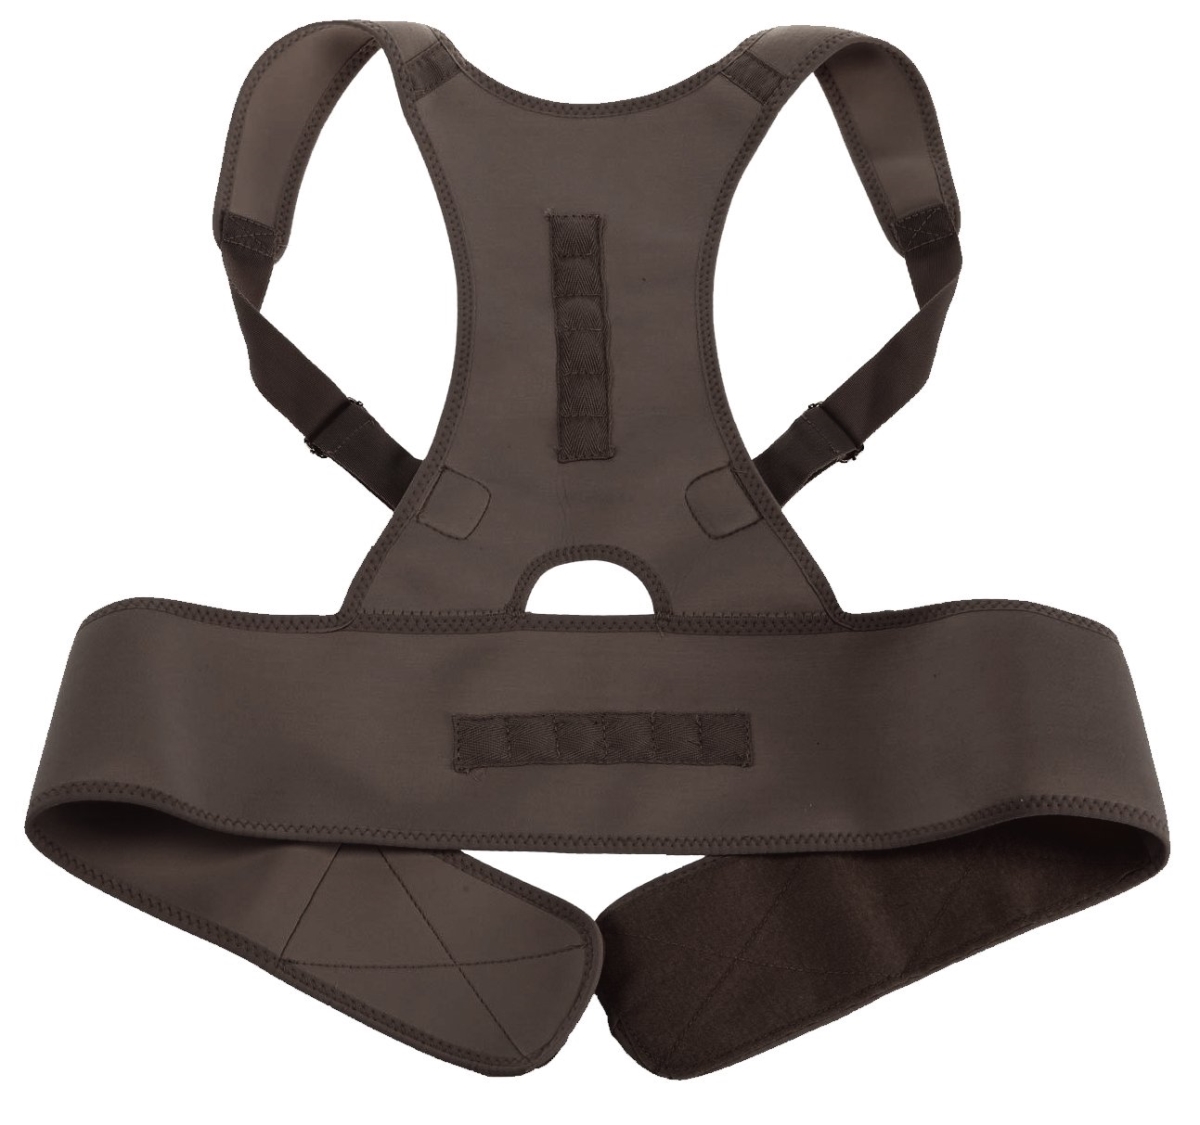 Rb4036549 Medical Grade Adjustable Magnetic Back Posture Support, Black - Regular